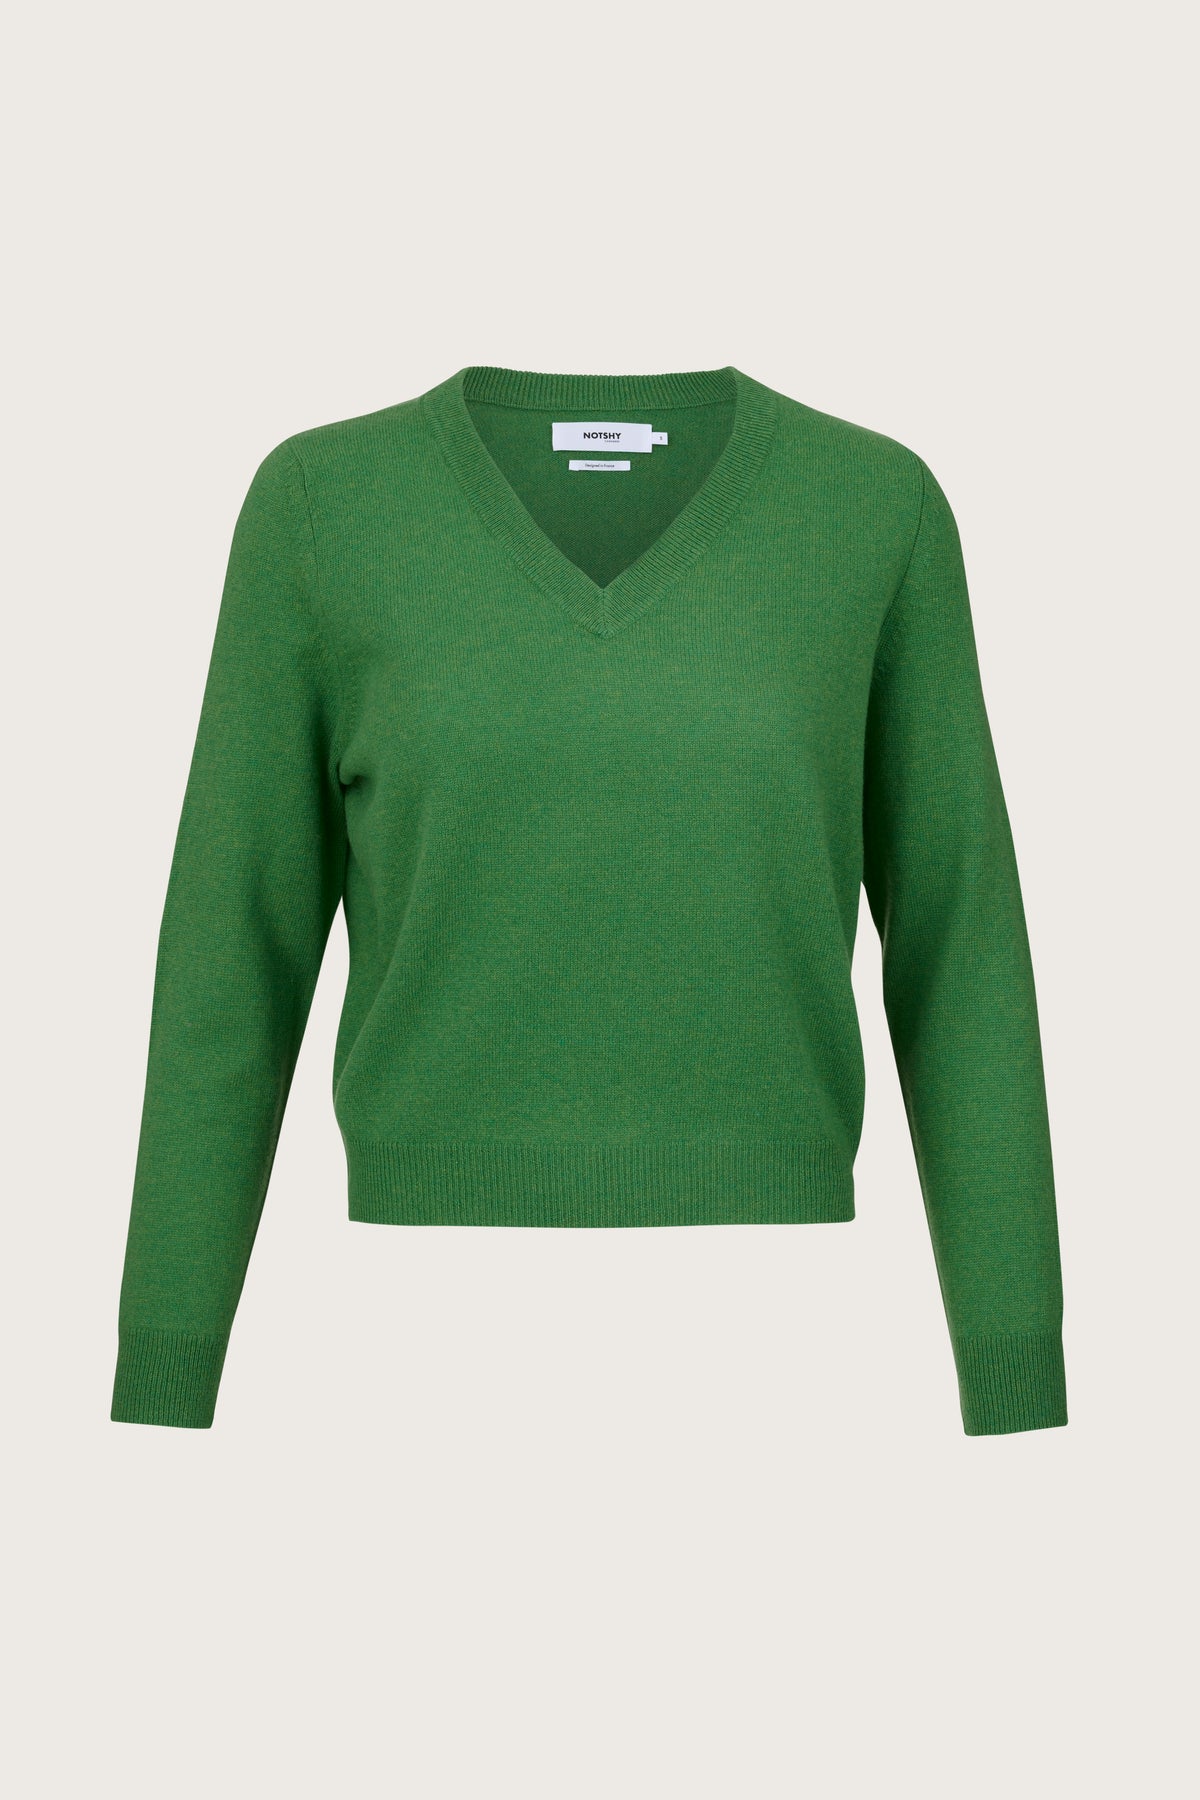 Forest green V neck cashmere jumper